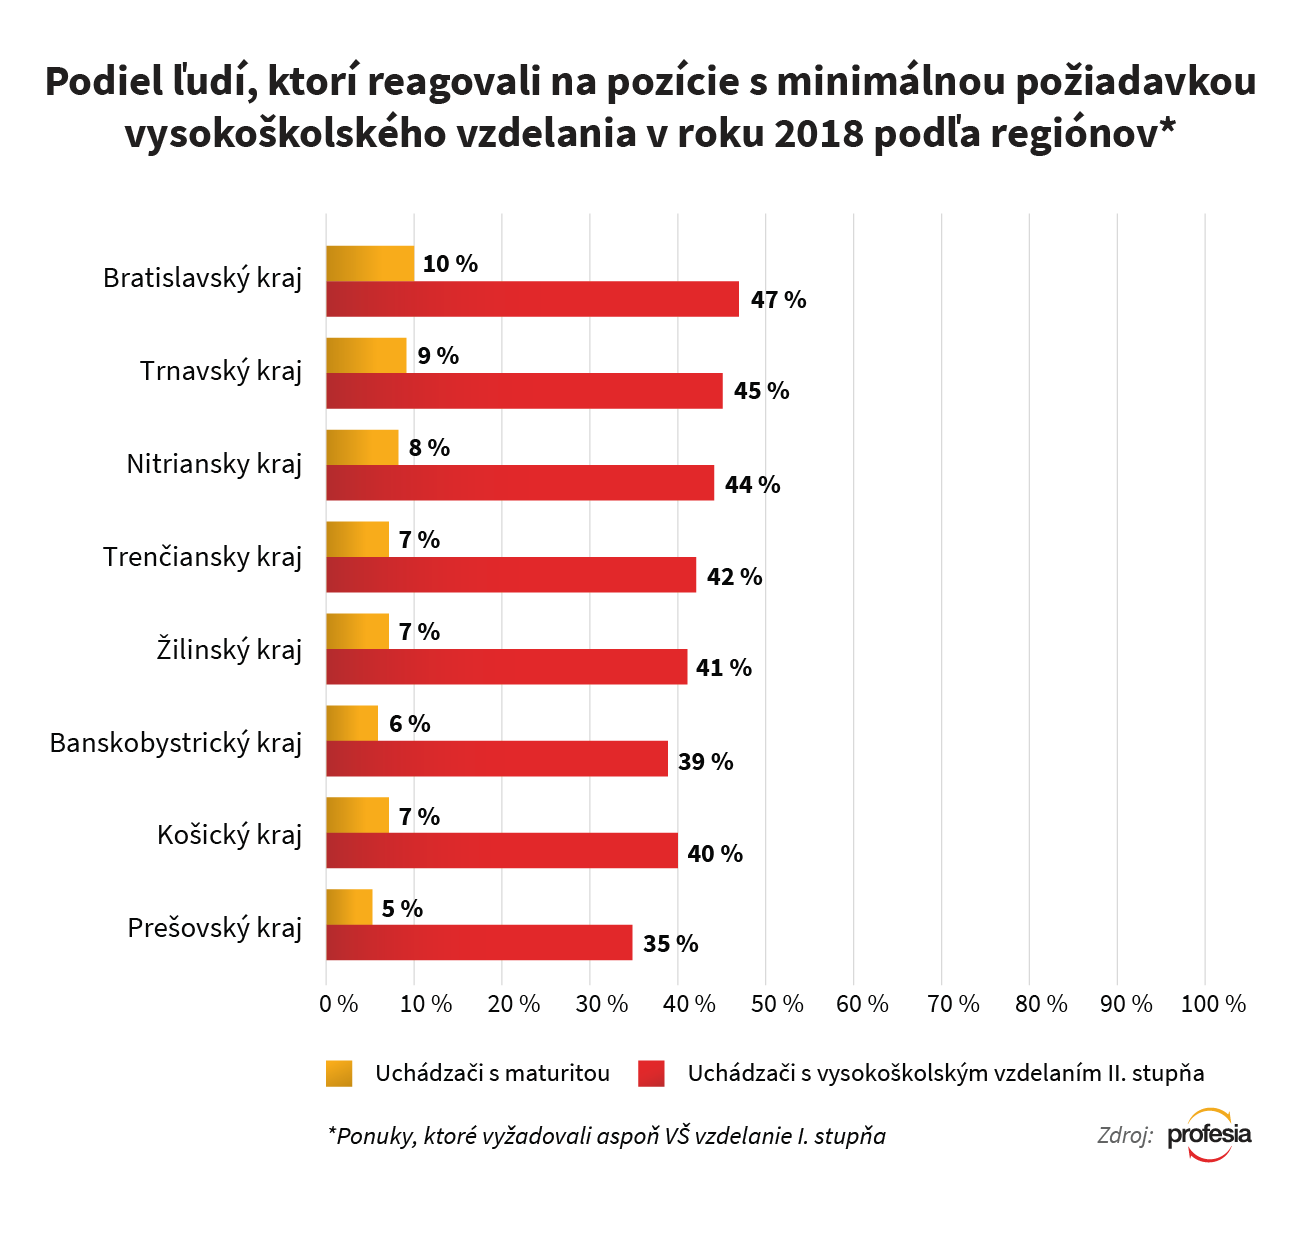 Profesia.sk - Reakcie na pracovné ponuky s požiadavkou VŠ vzdelania podľa regiónu 2018